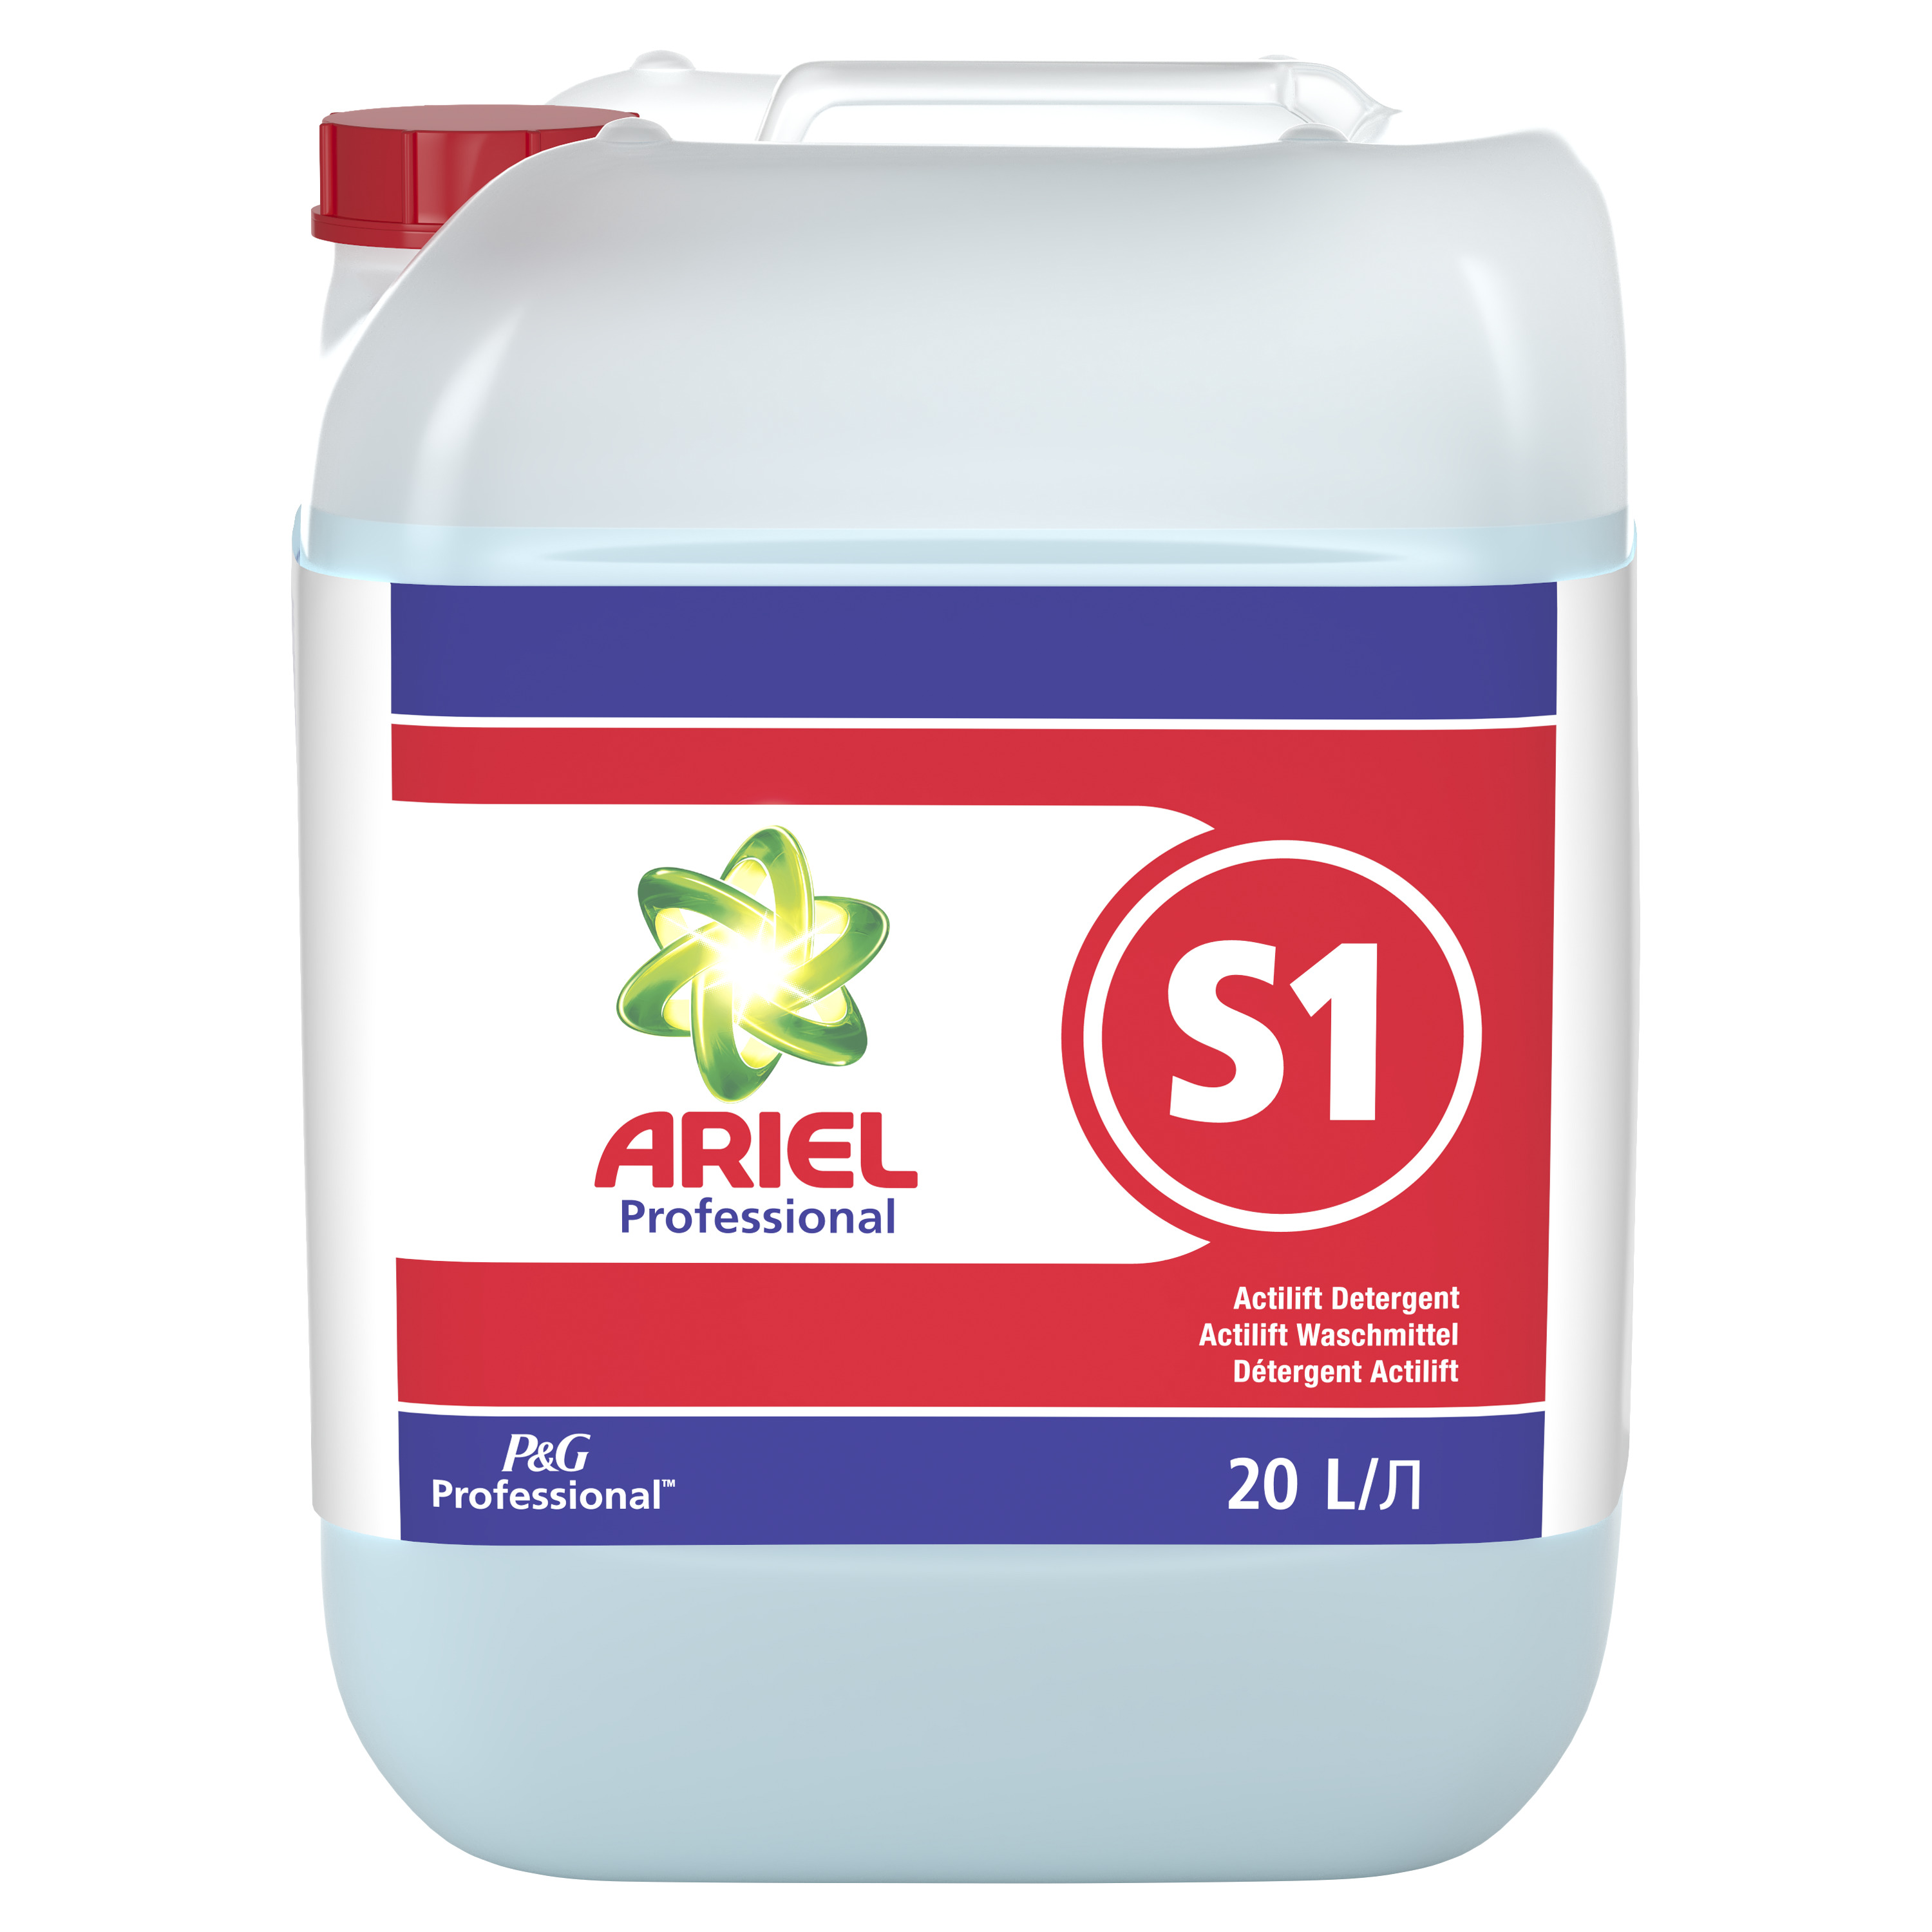 Ariel - Professional S1 20 Liter Actilift Flüssigvollwaschmittel